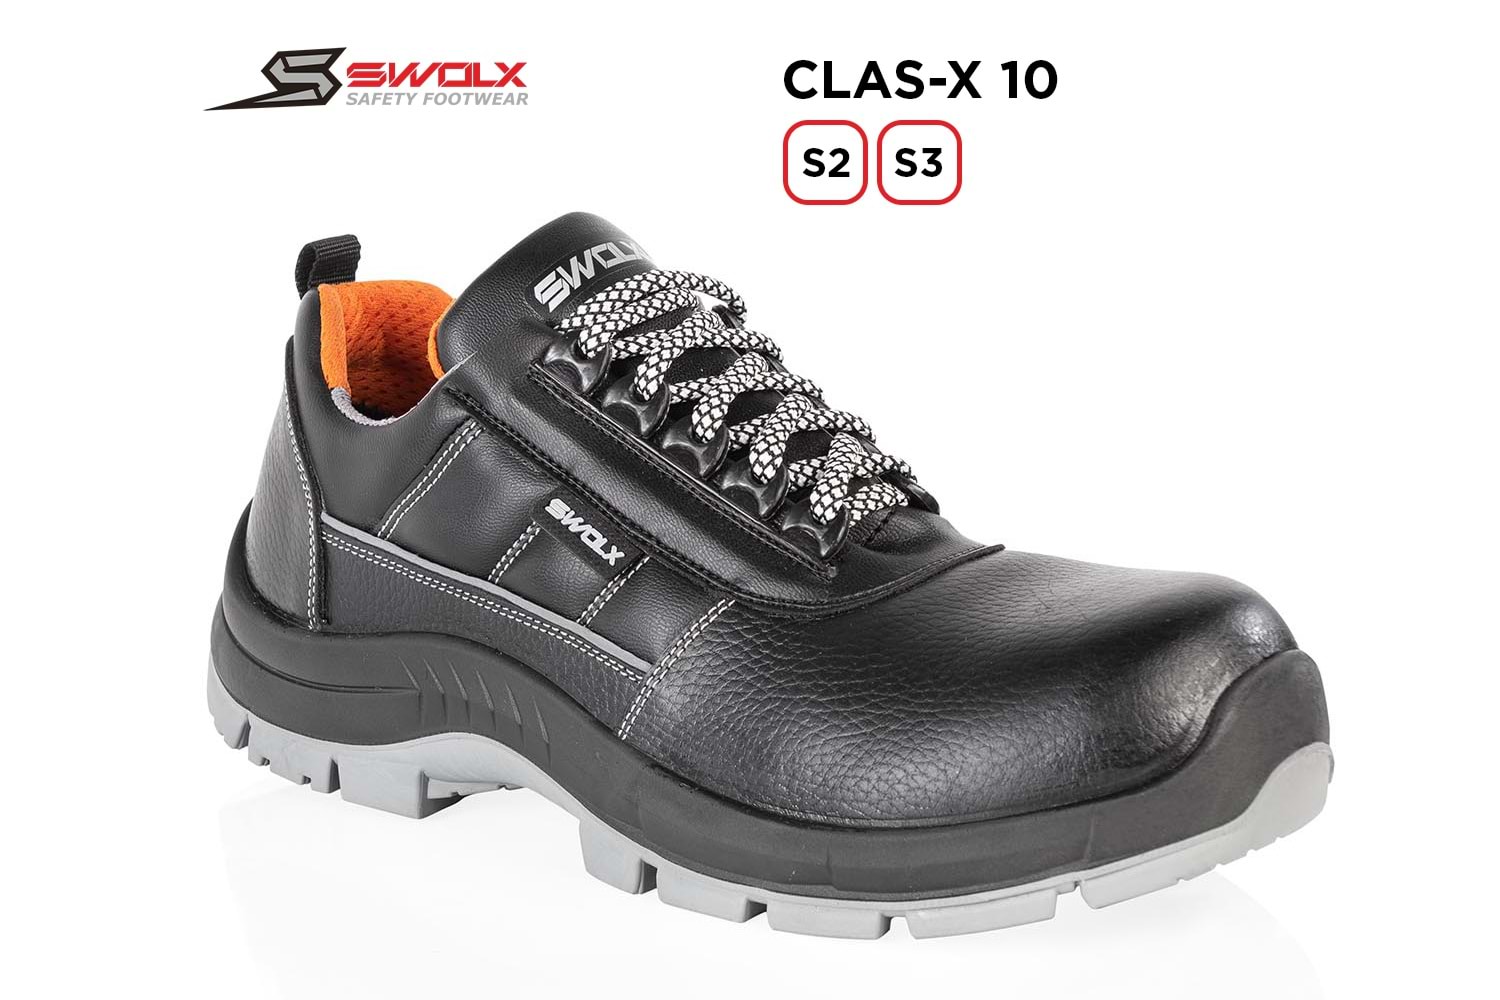 Swolx İş Ayakkabısı - Clas-X 10 S3 - 45